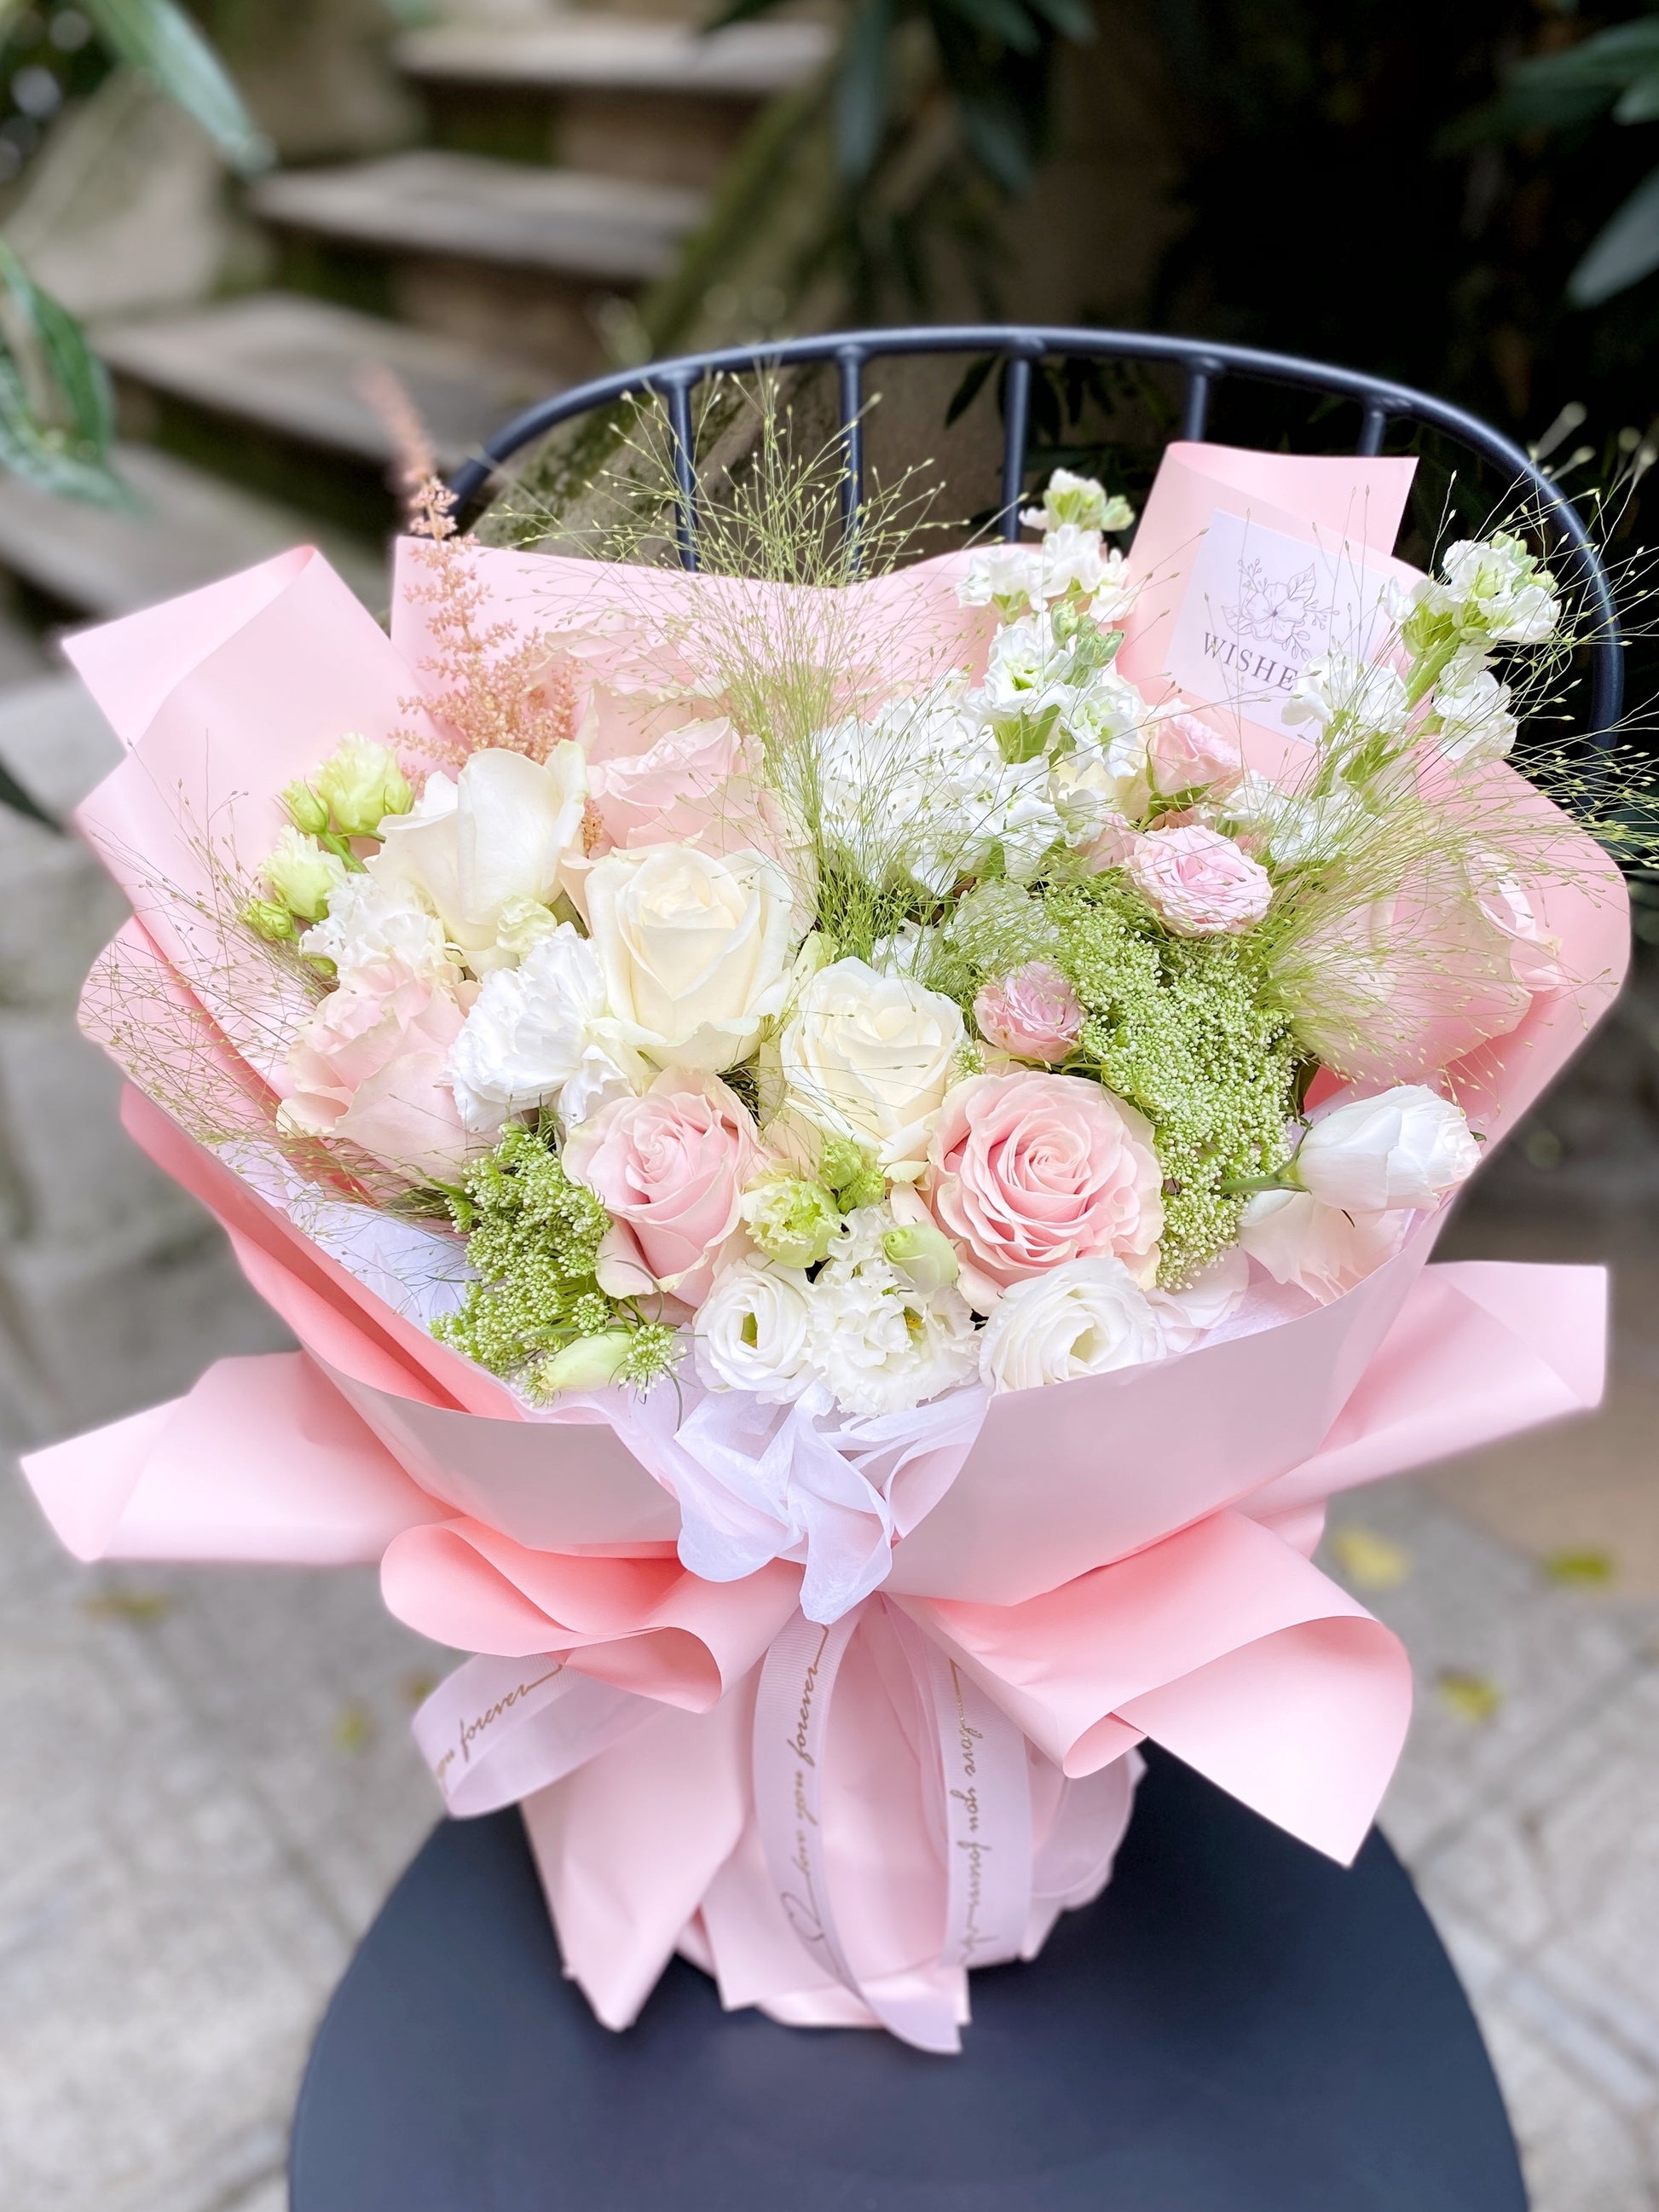 Medium Fresh Flower Bouquet - Pink Mixed – WishesMilano